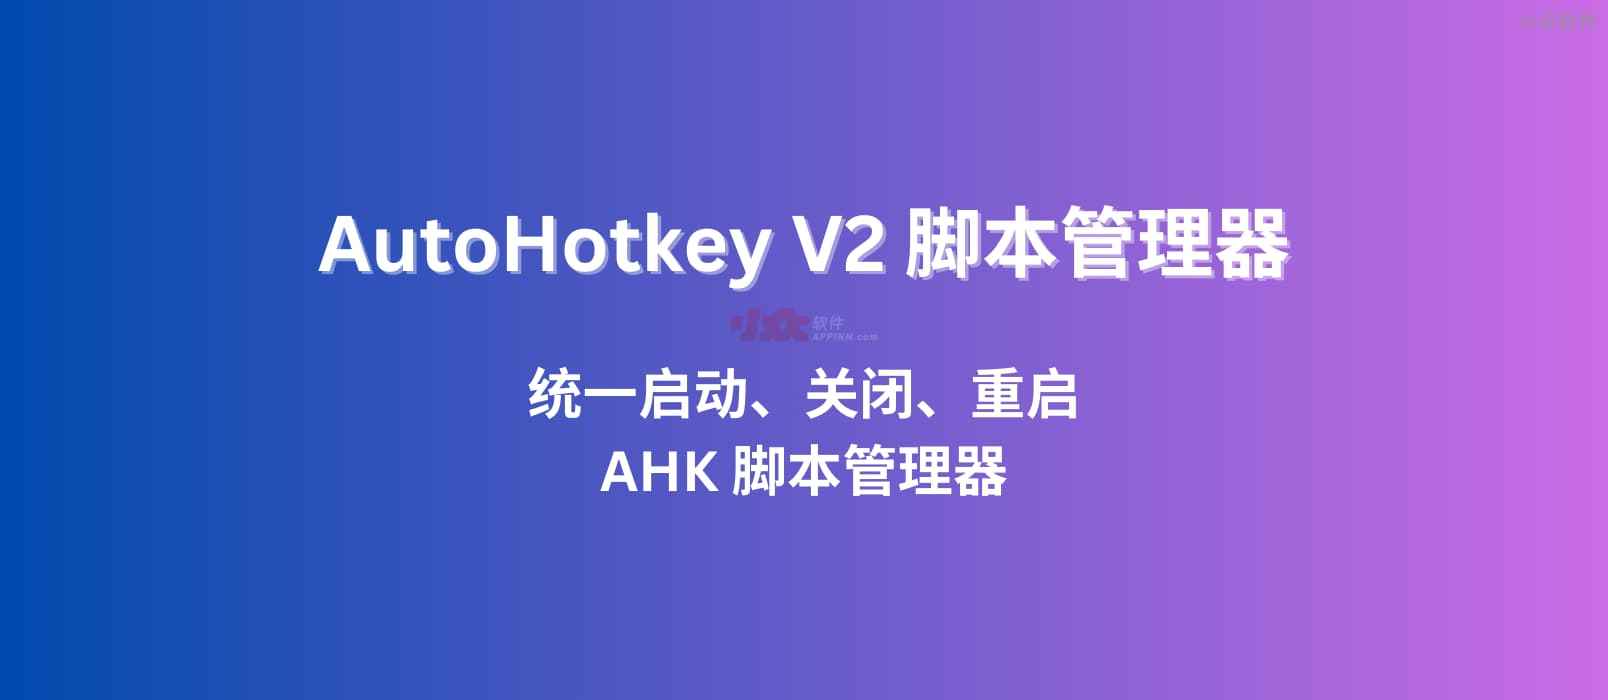 AHK2Manager - 基于 AutoHotKey V2，统一启动、关闭、重启 AHK 脚本管理器 